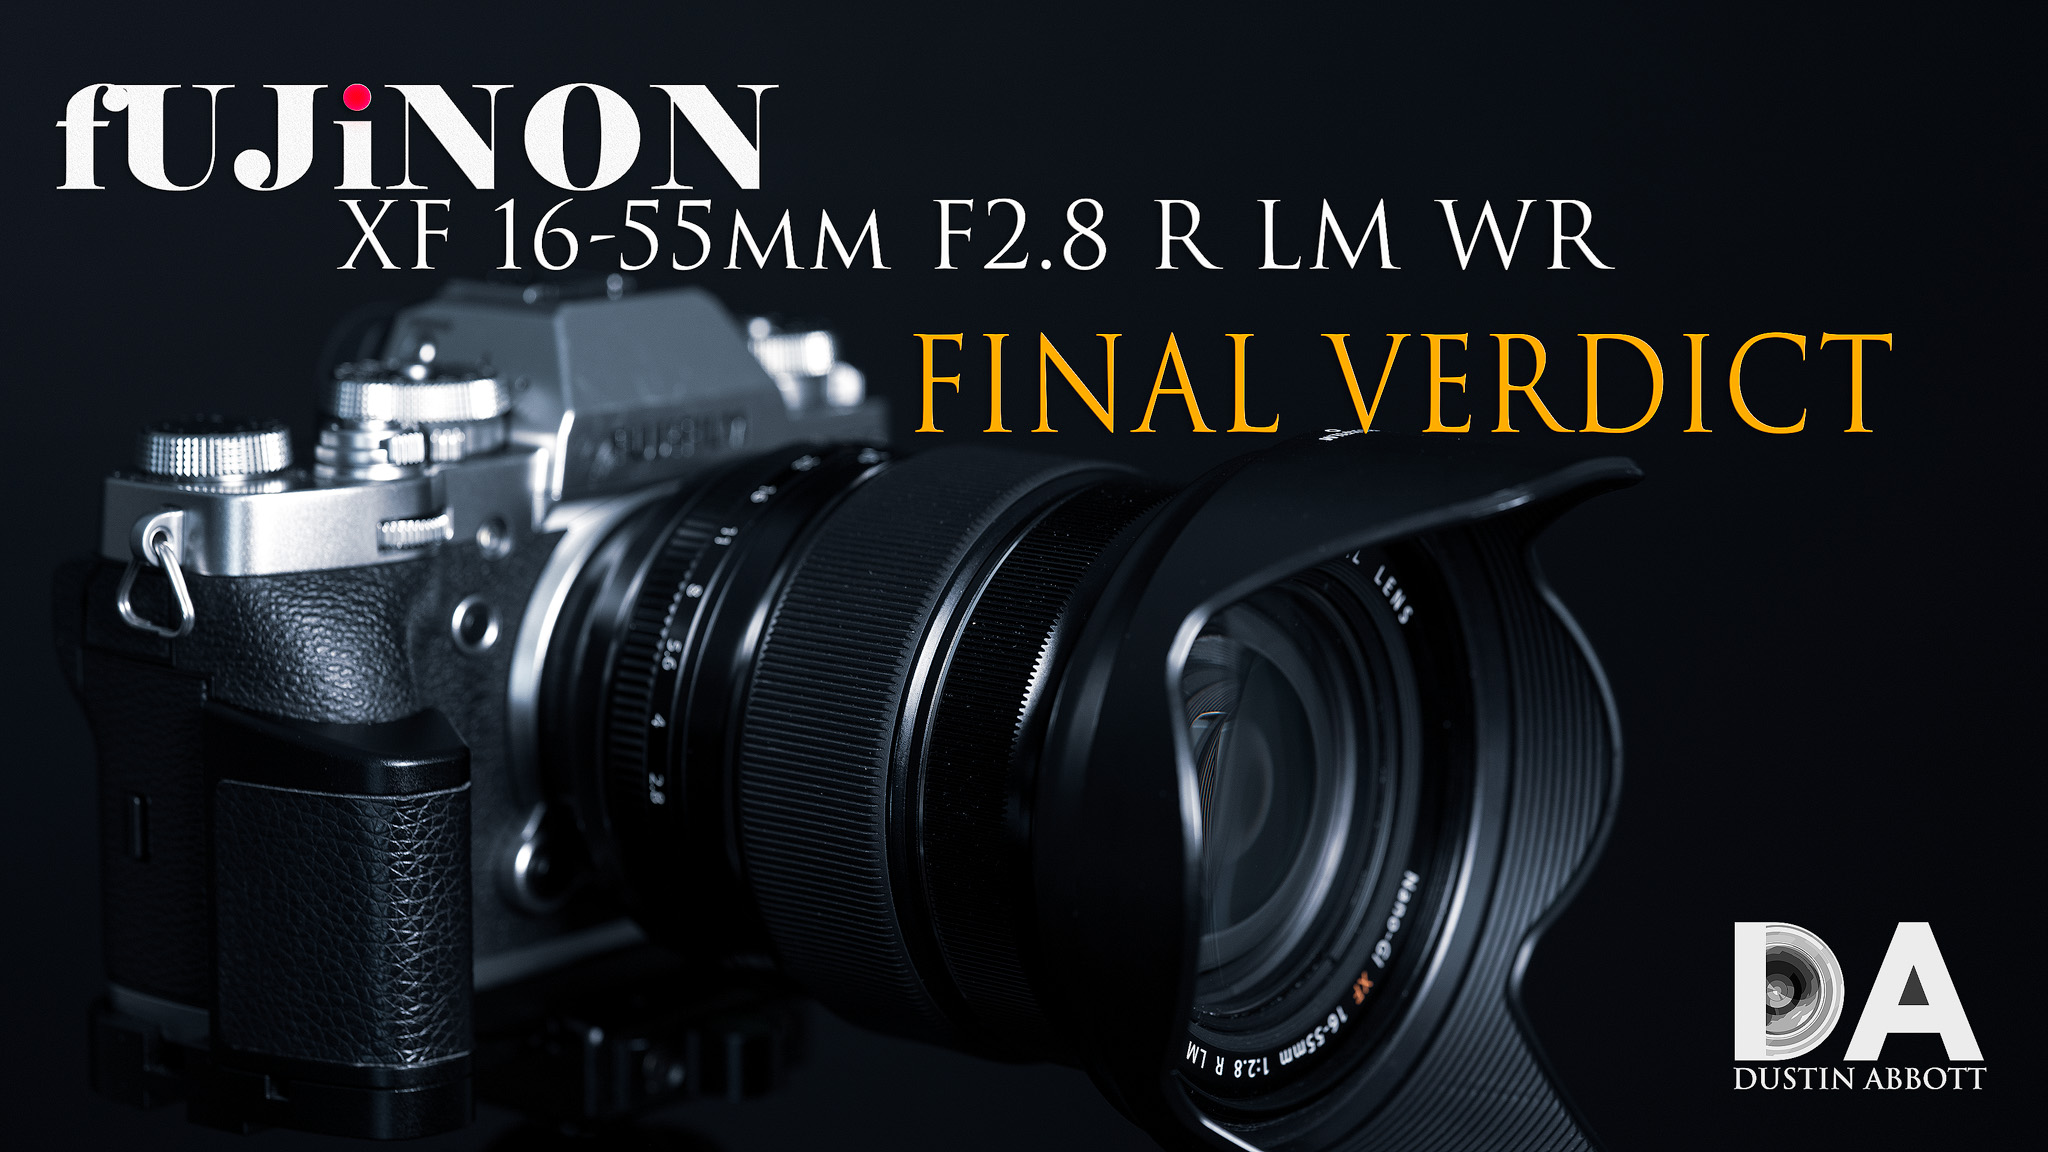 Fujinon XF 16-55mm F2.8 LM WR Review - DustinAbbott.net